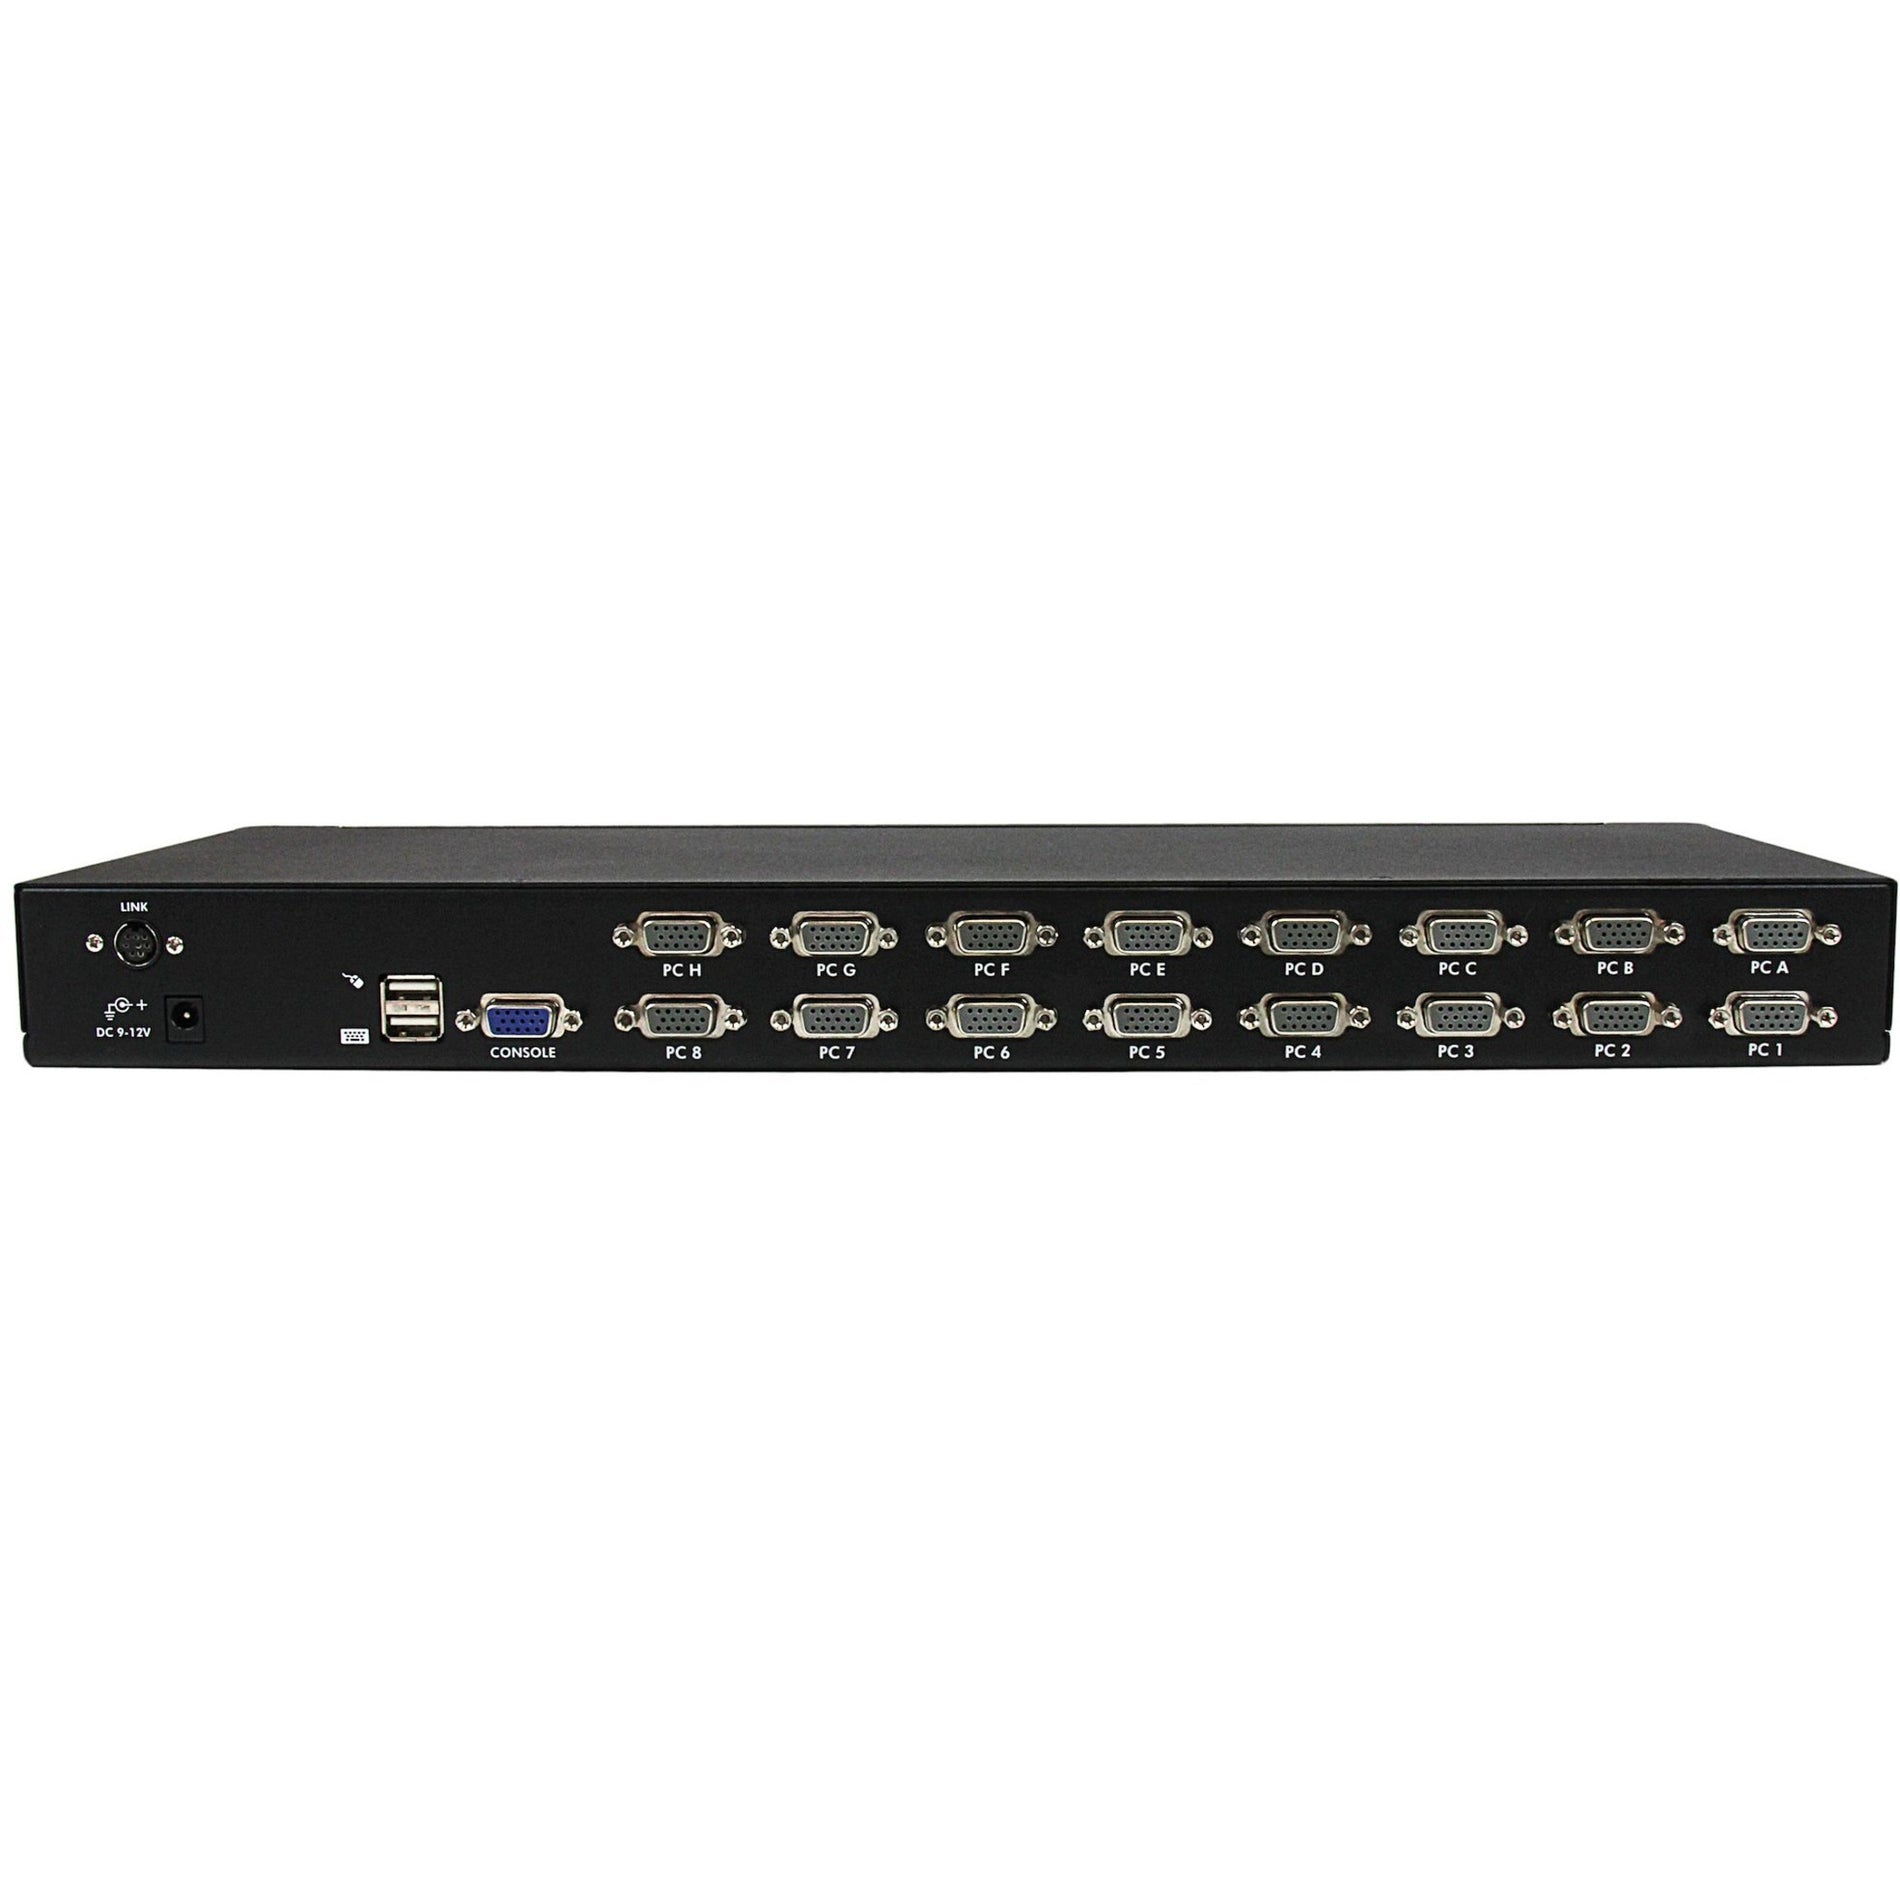 StarTech.com SV1631DUSBU 16 Port 1U Rack Mount USB KVM Switch with OSD, 1920 x 1440 Resolution, 3 Year Warranty